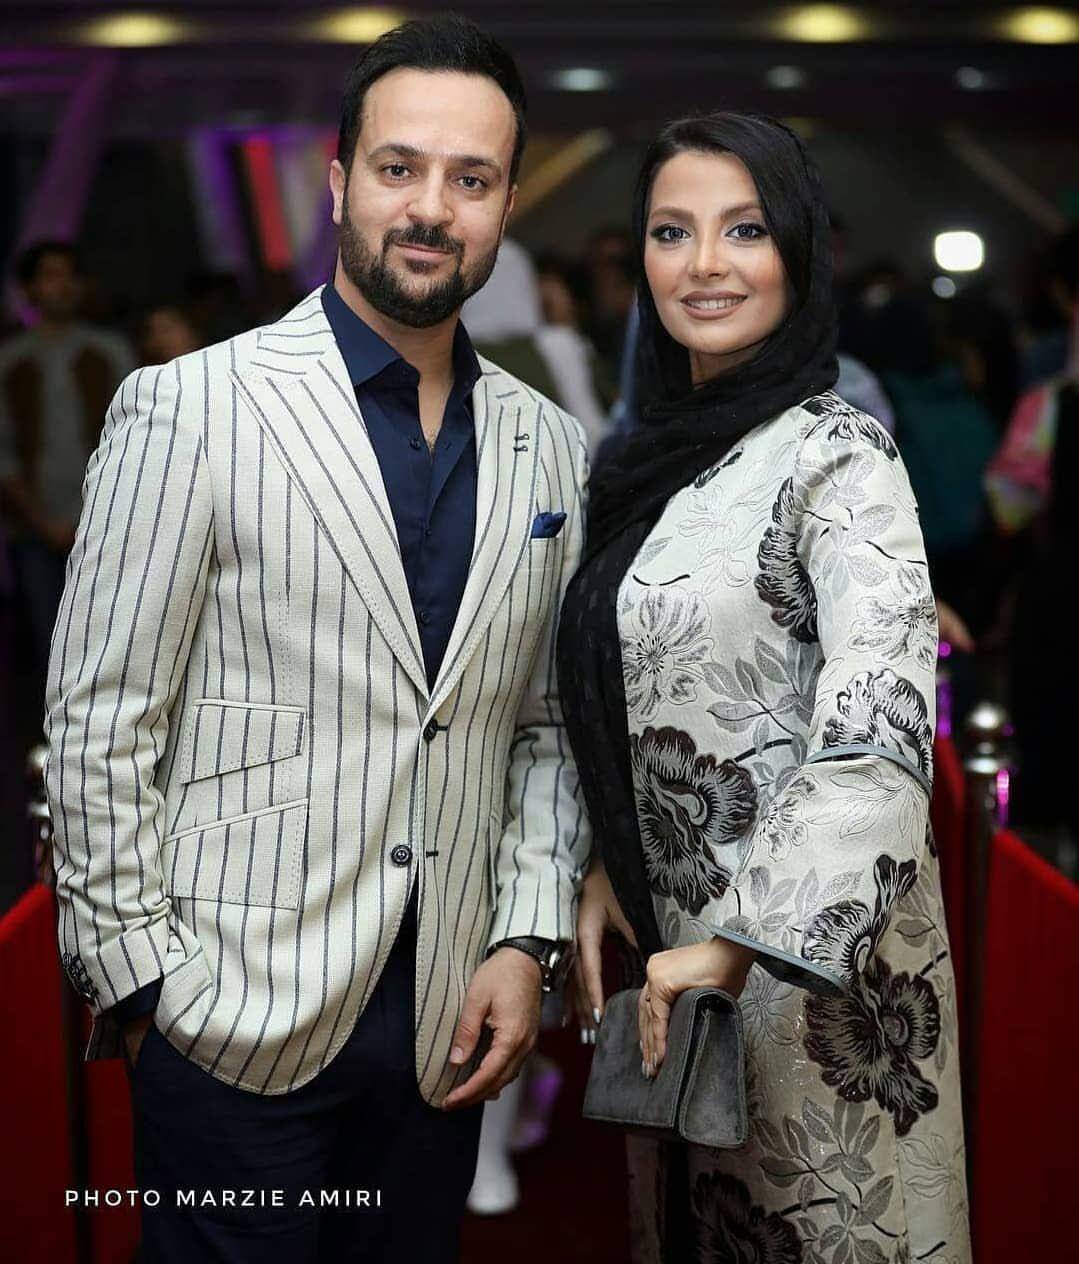 احمد مهرانفر و همسرش مونا فائض پور,اخبار هنرمندان,خبرهای هنرمندان,بازیگران سینما و تلویزیون